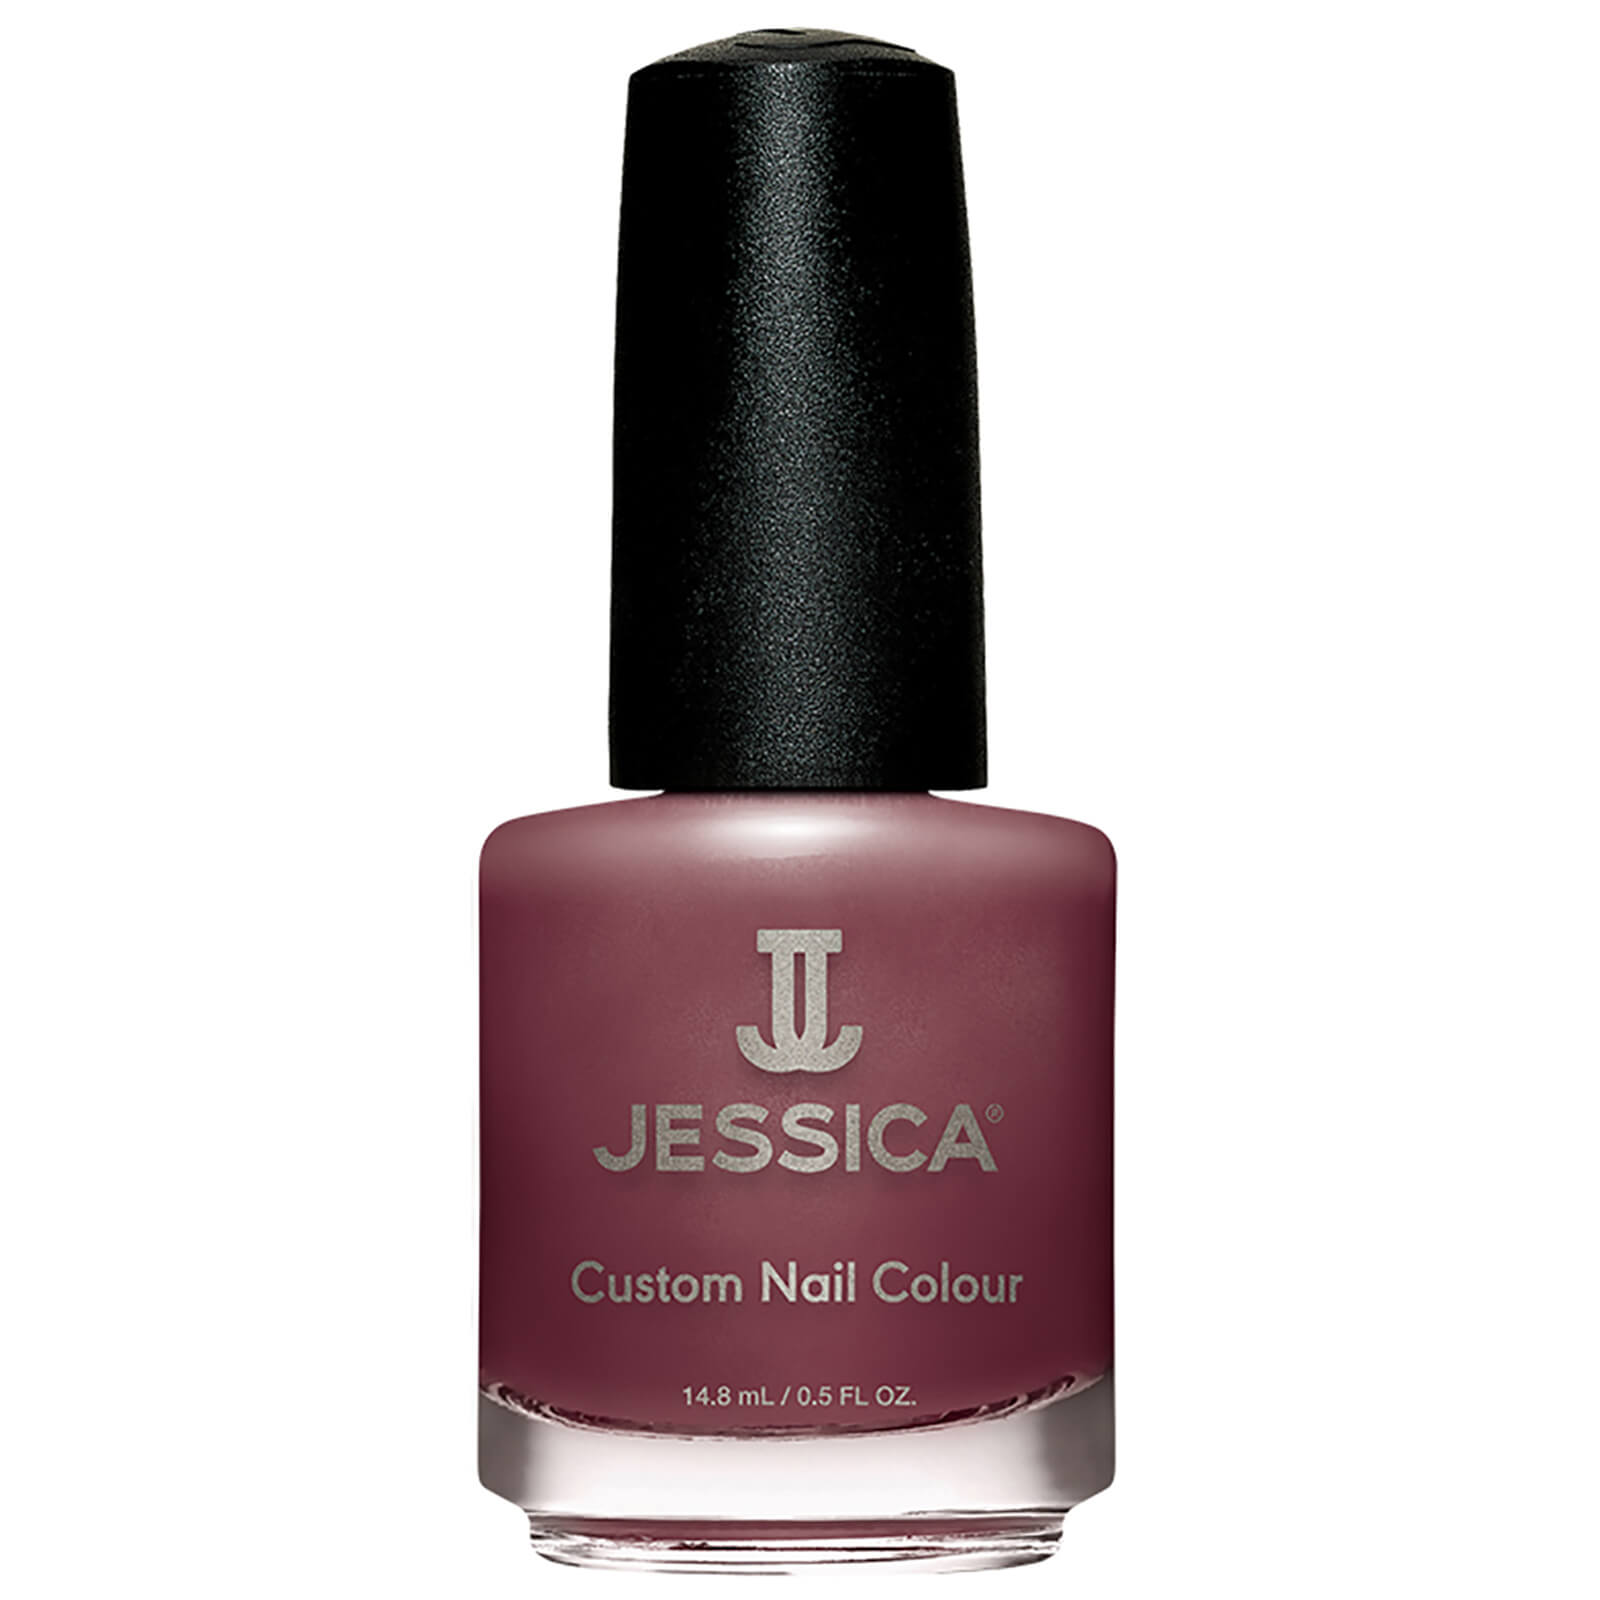 Esmalte de uñas Custom Nail Colour de Jessica - Luscious Leather